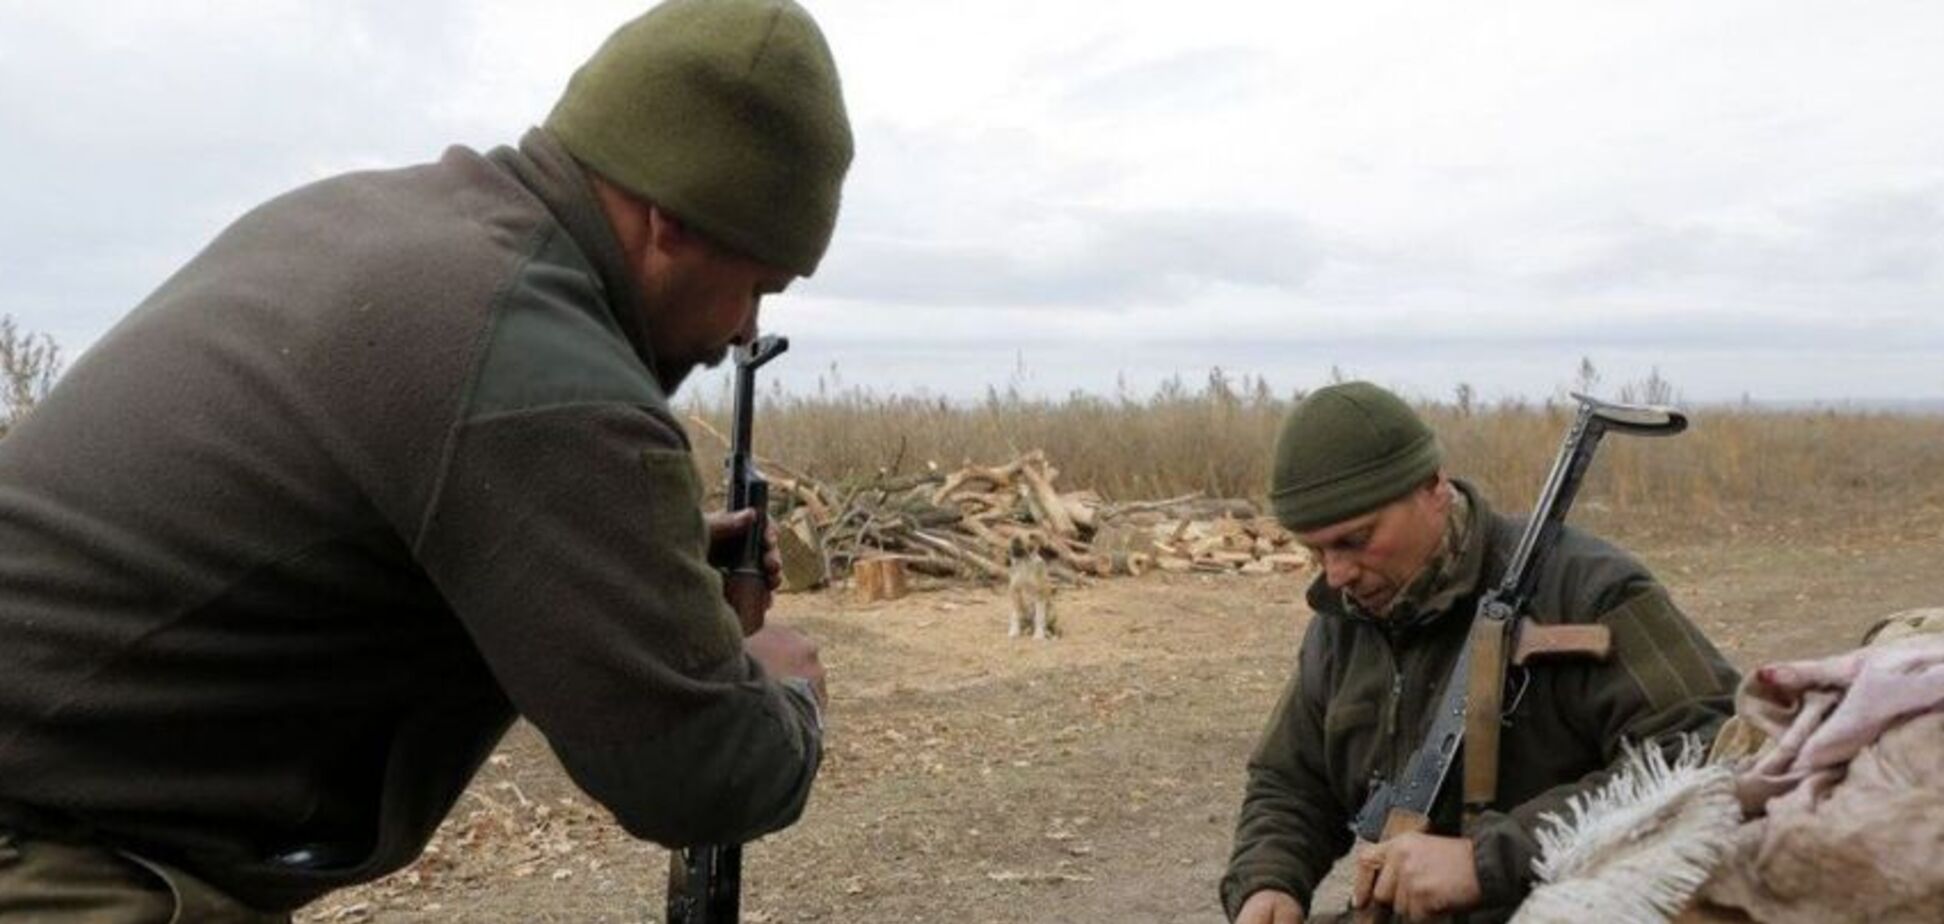 Оружие готово! Бойцы ВСУ вычислили 'ползущую' диверсию врага на Донбассе. Видео